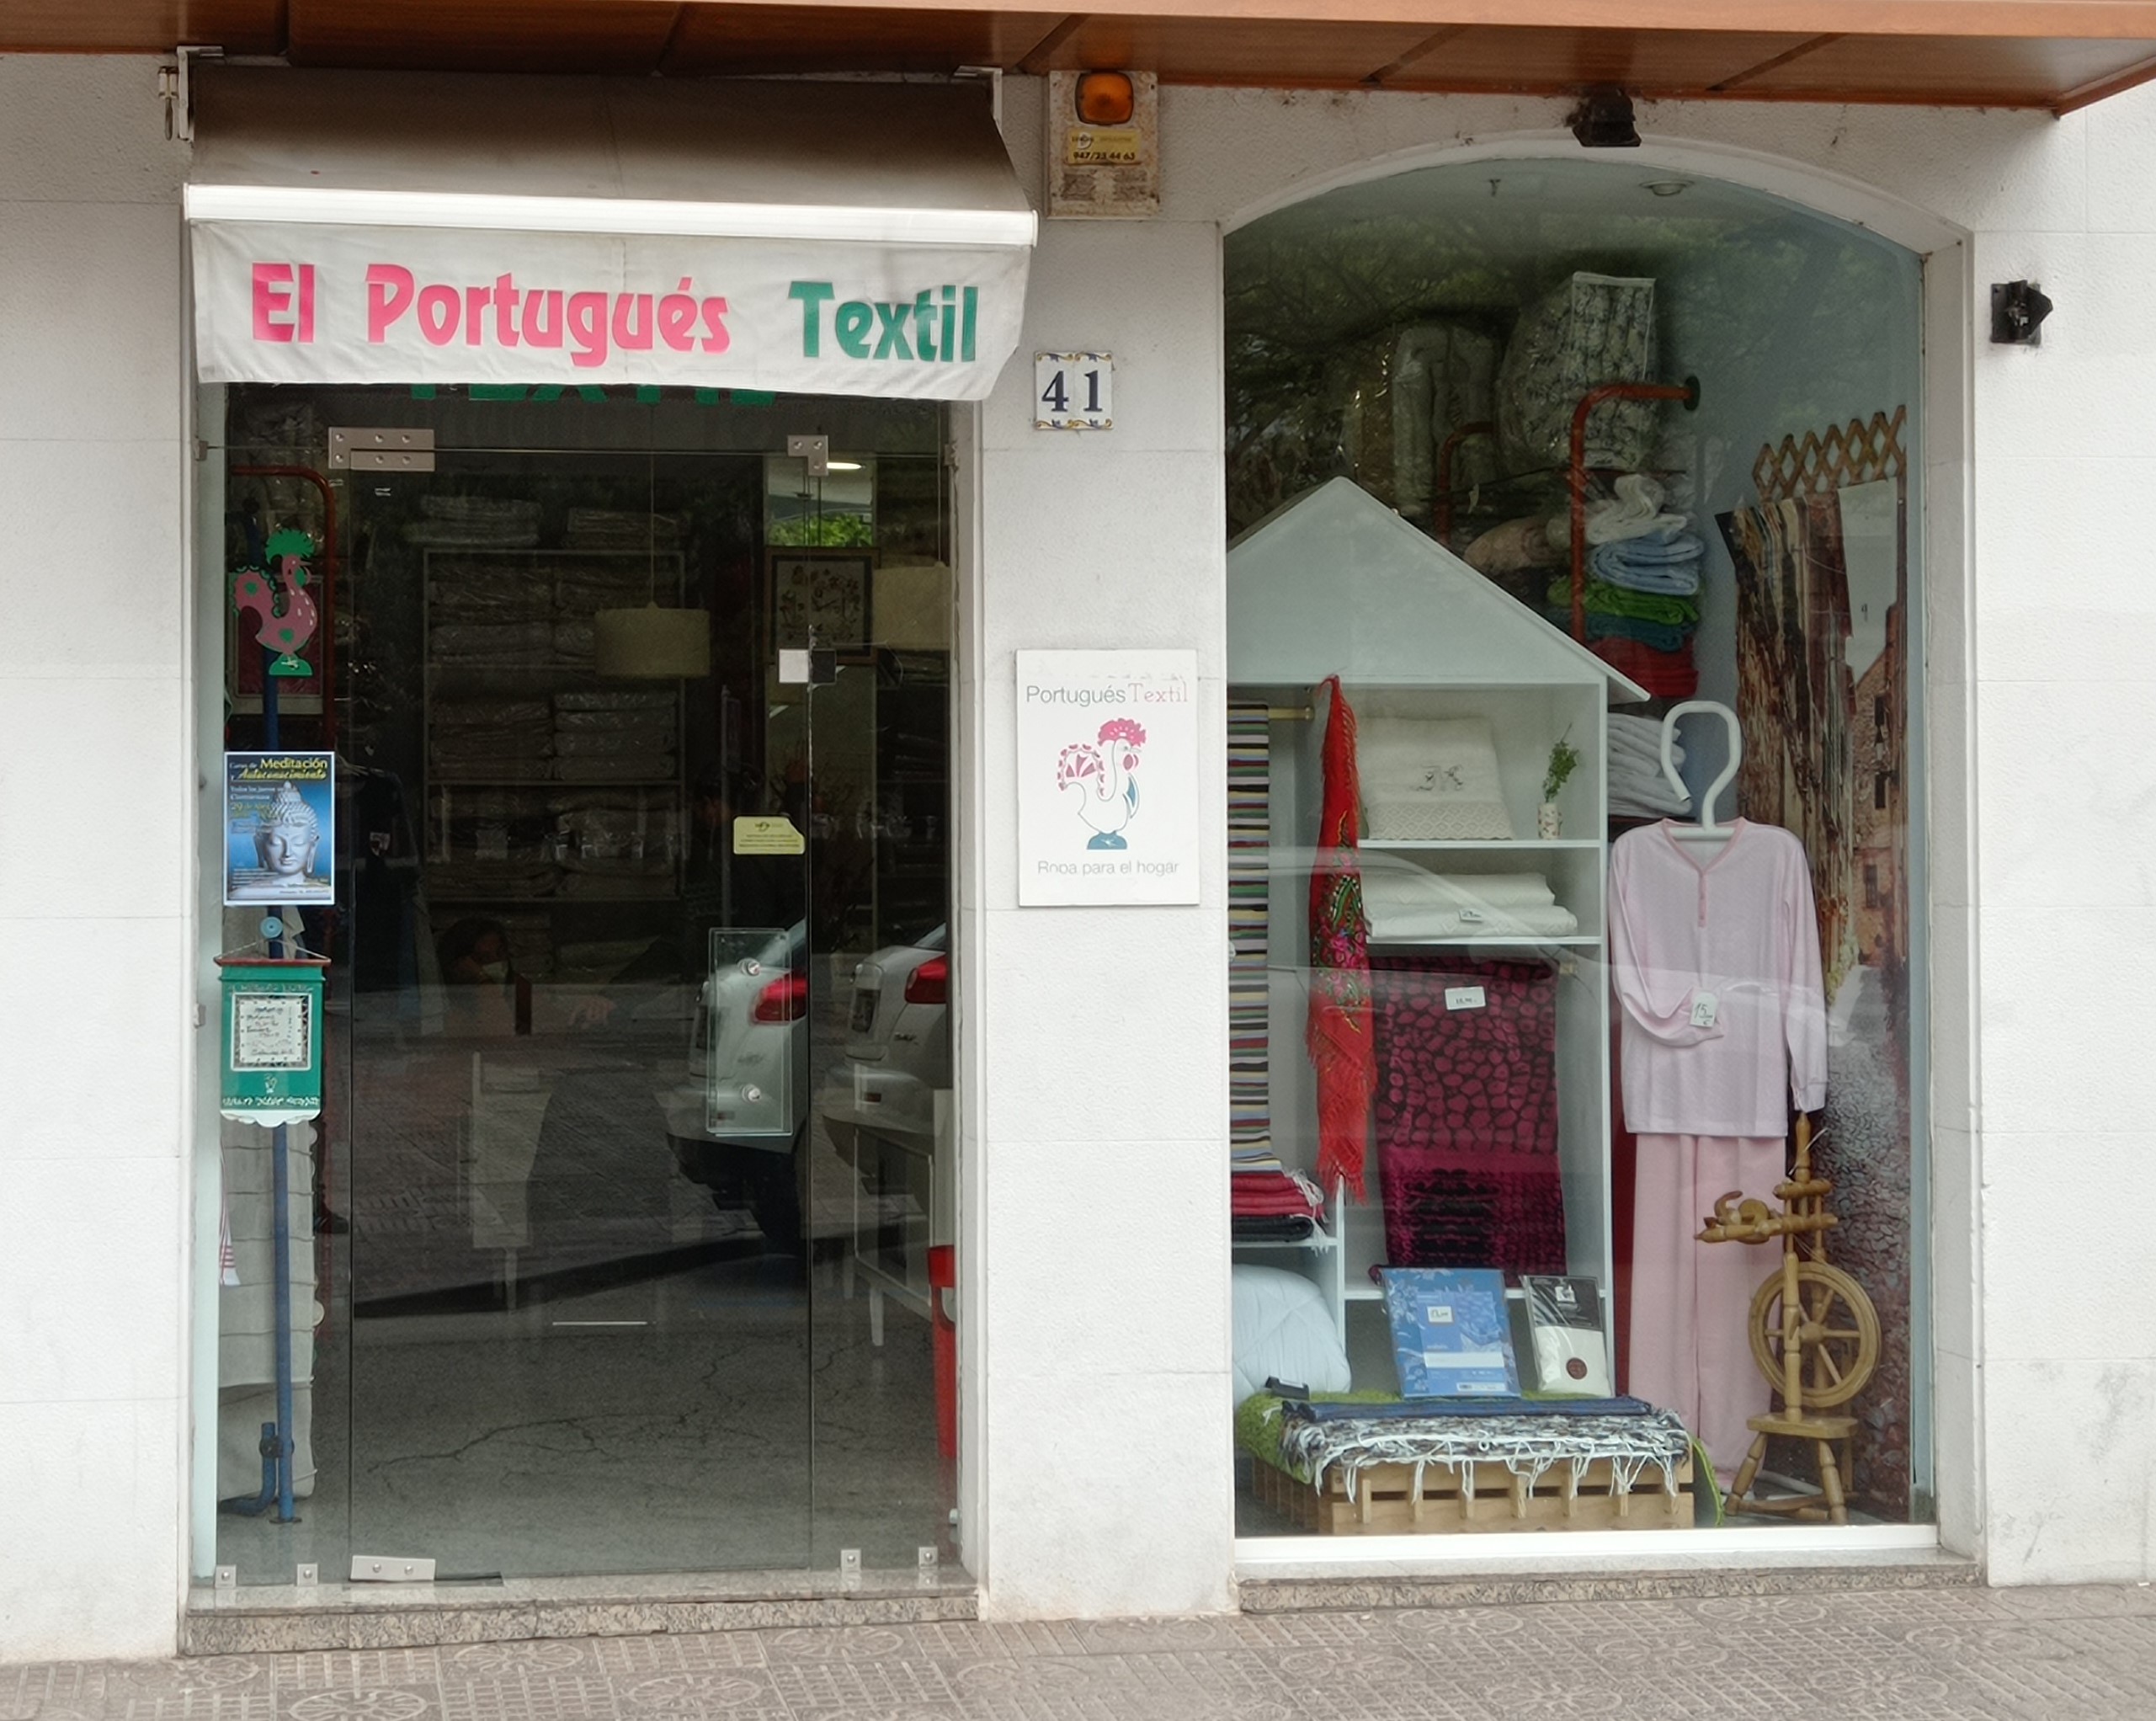 El Portugues Textil